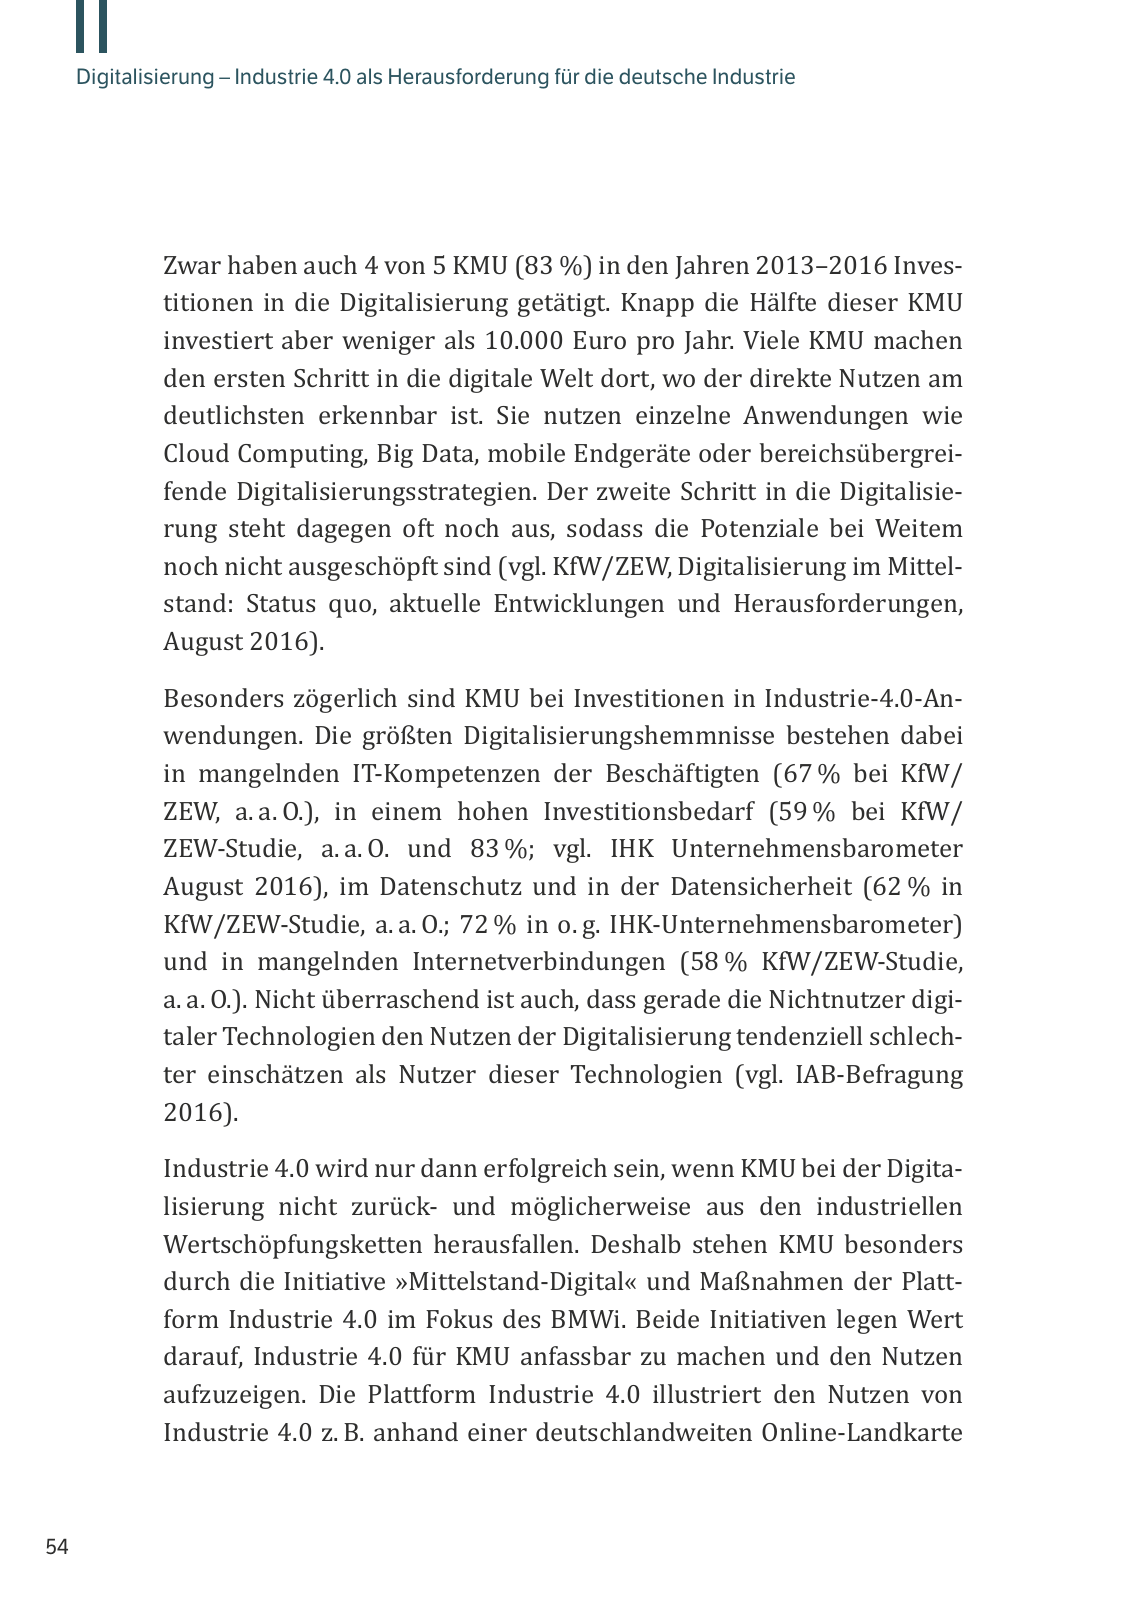 Vorschau M. Vassiliadis // Digitalisierung und Industrie 4.0 Seite 54